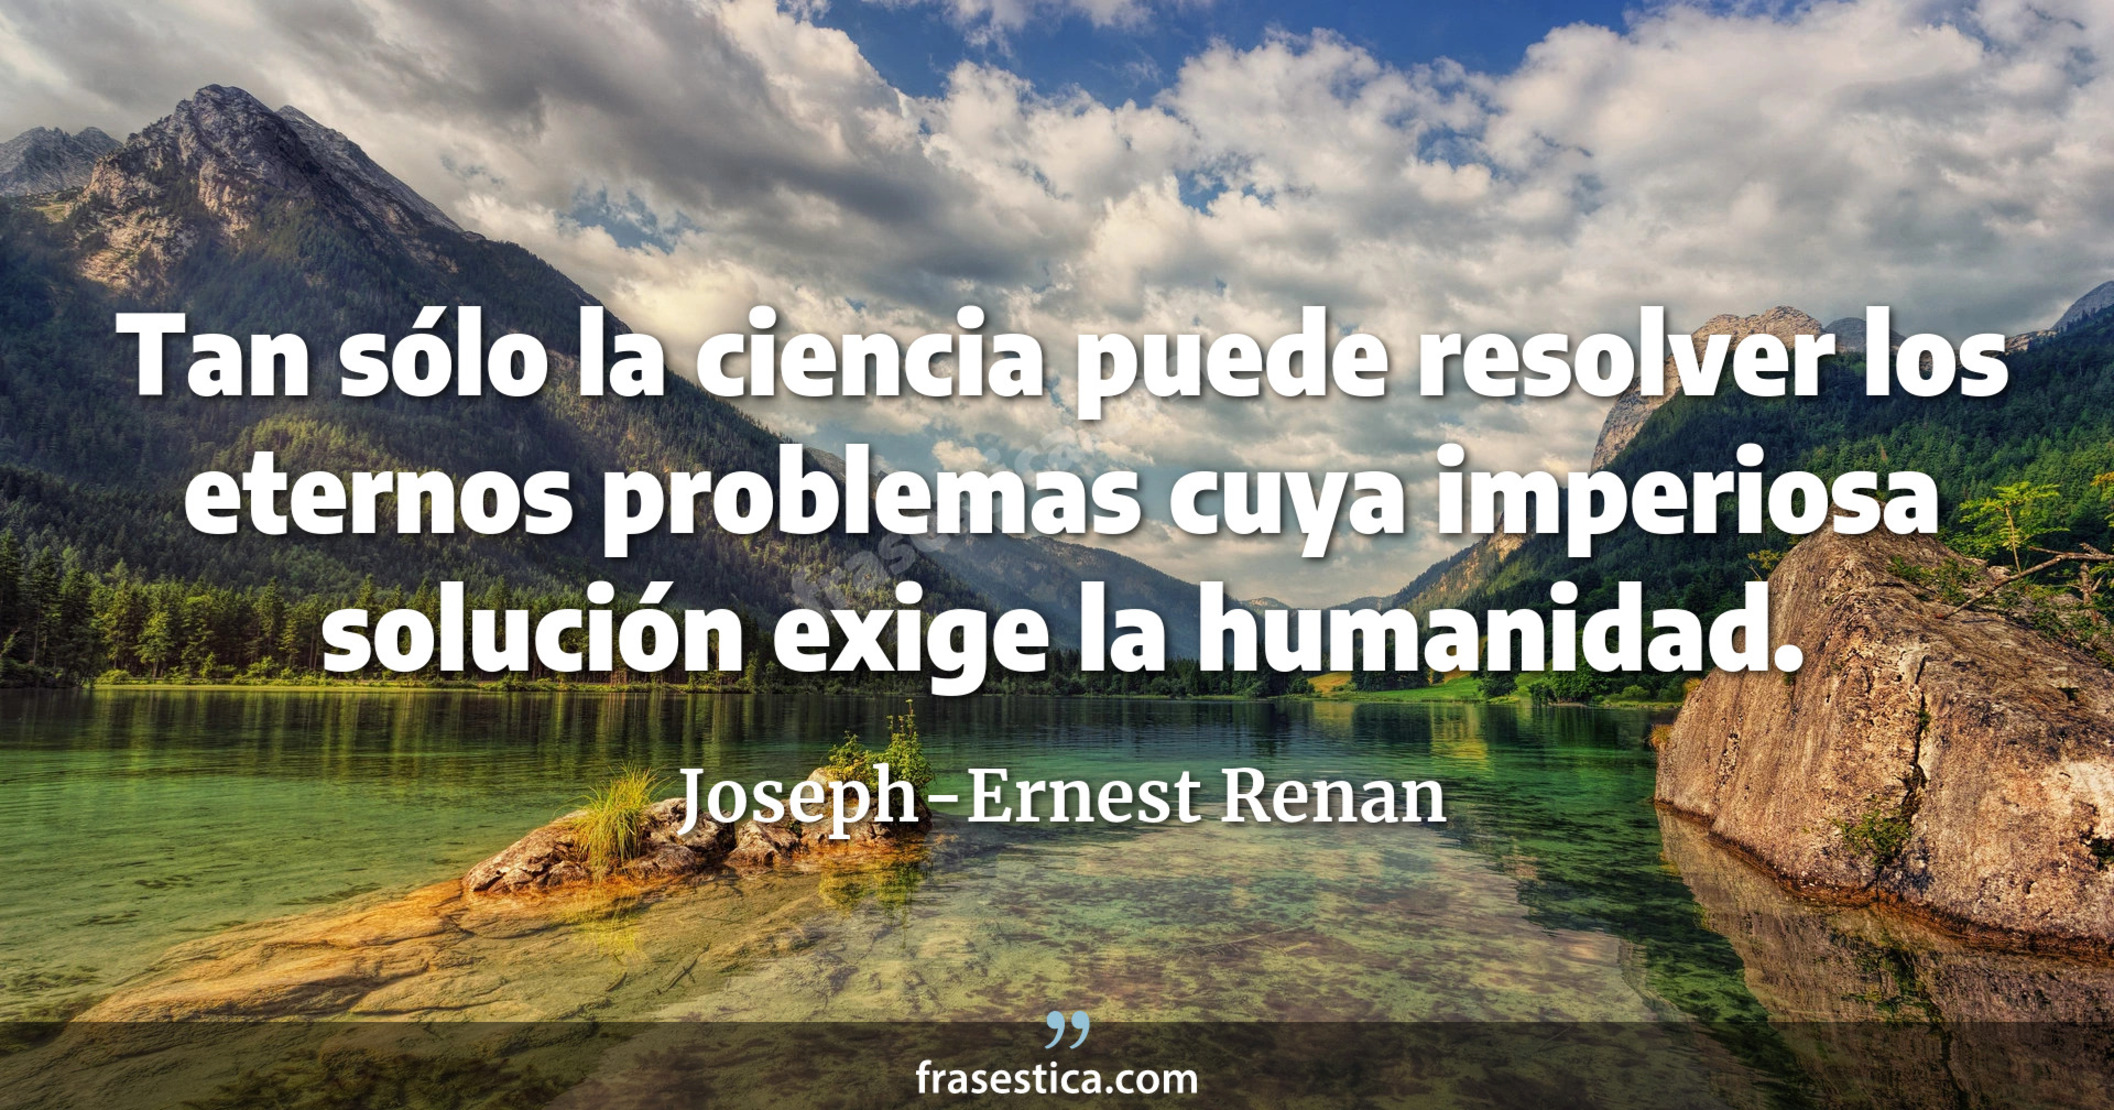 Tan sólo la ciencia puede resolver los eternos problemas cuya imperiosa solución exige la humanidad. - Joseph-Ernest Renan